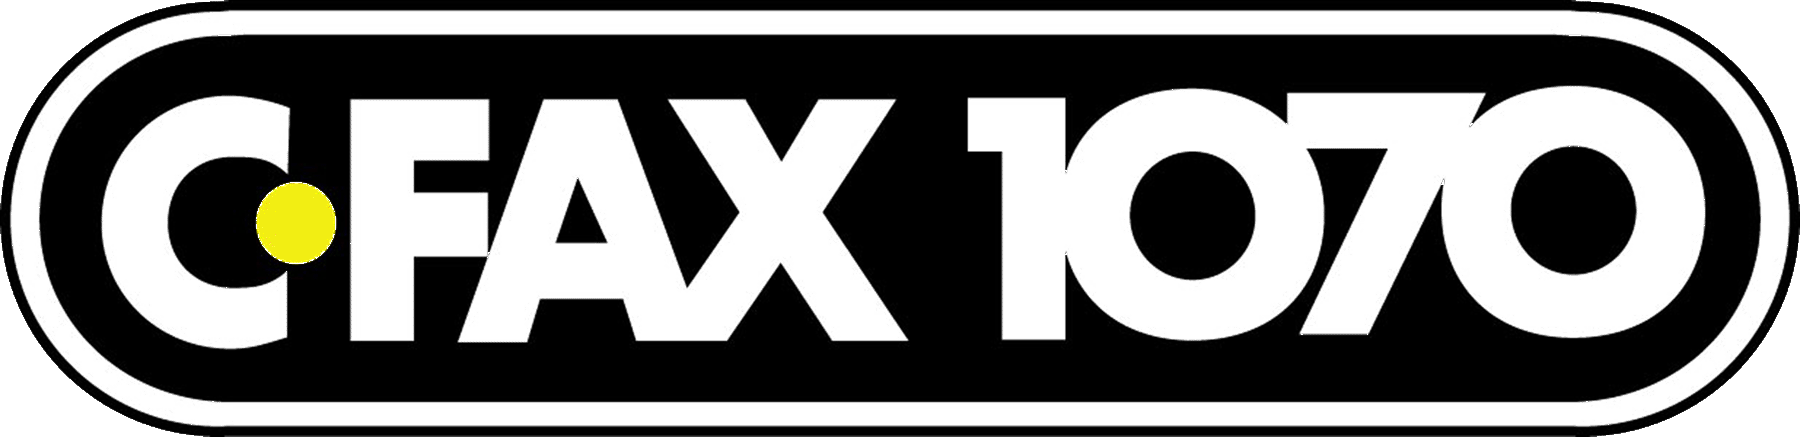 CFAX_logo_March_2009.gif